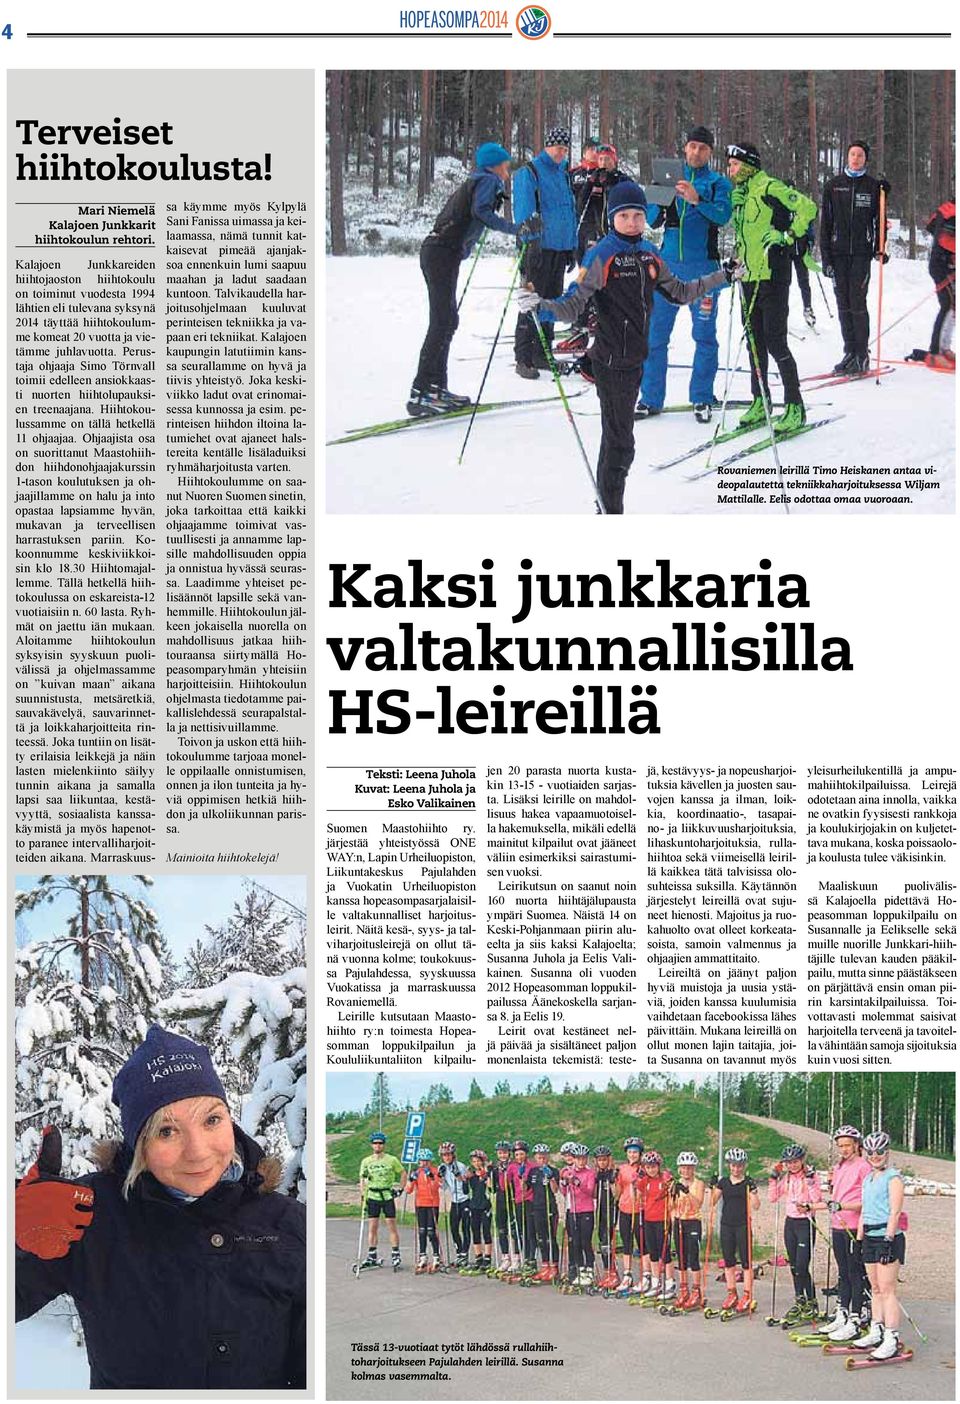 Perustaja ohjaaja Simo Törnvall toimii edelleen ansiokkaasti nuorten hiihtolupauksien treenaajana. Hiihtokoulussamme on tällä hetkellä 11 ohjaajaa.